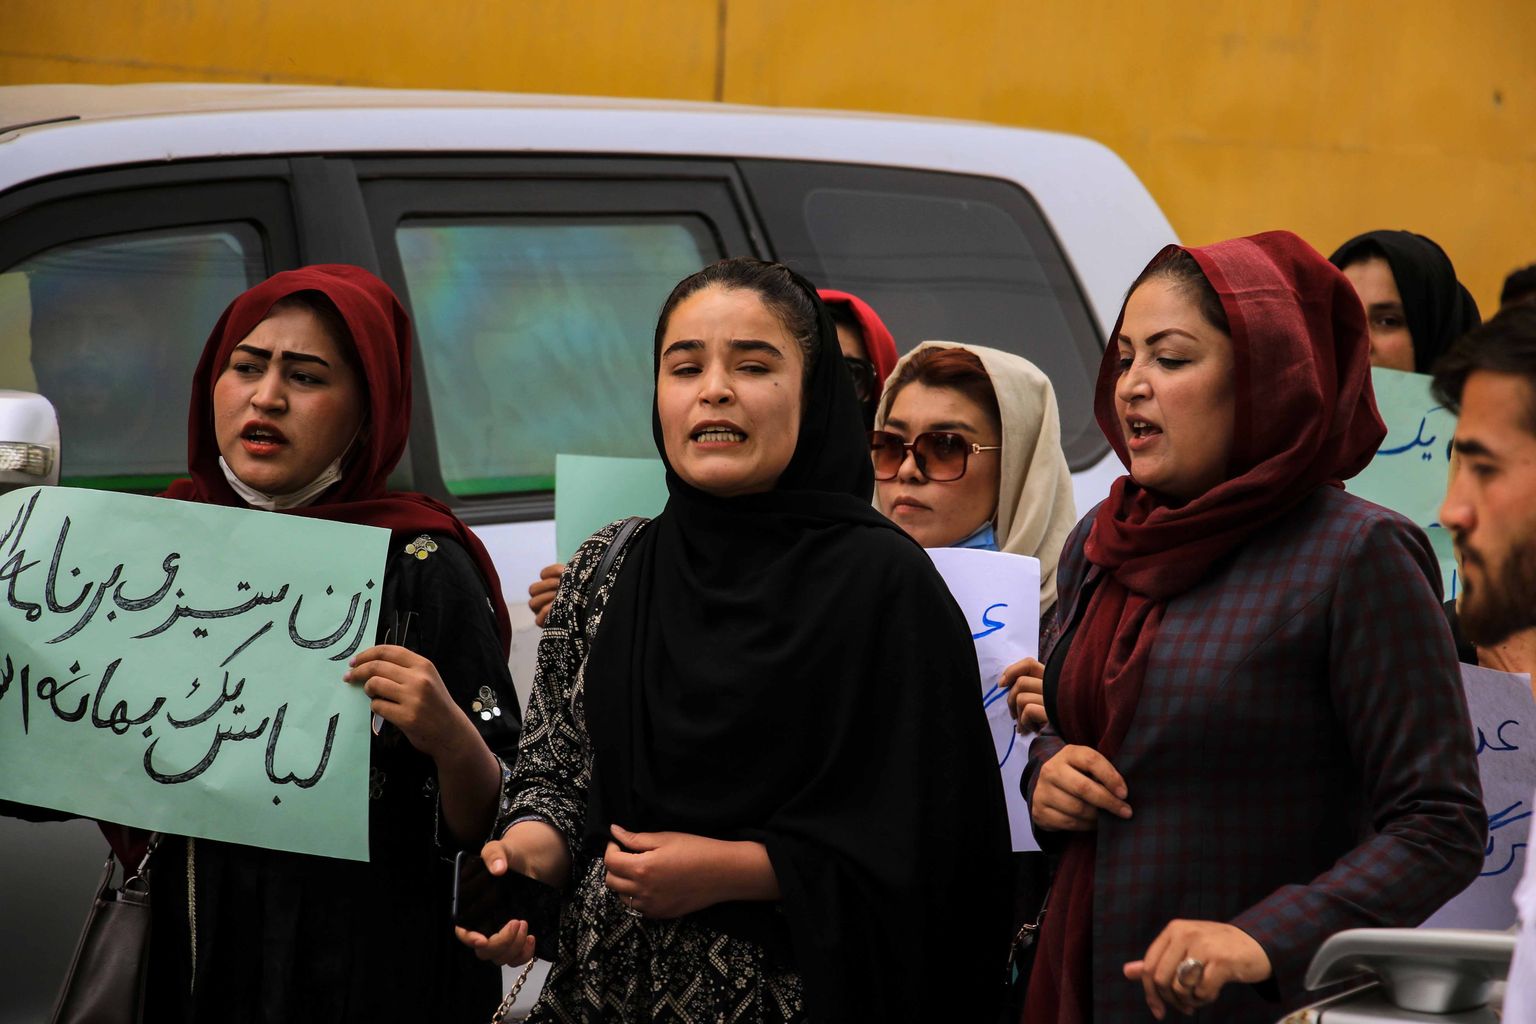 10. mail toimusid meeleavaldused, milles protesteeriti Talibani poolt kehtestatud piirangute vastu naistele.